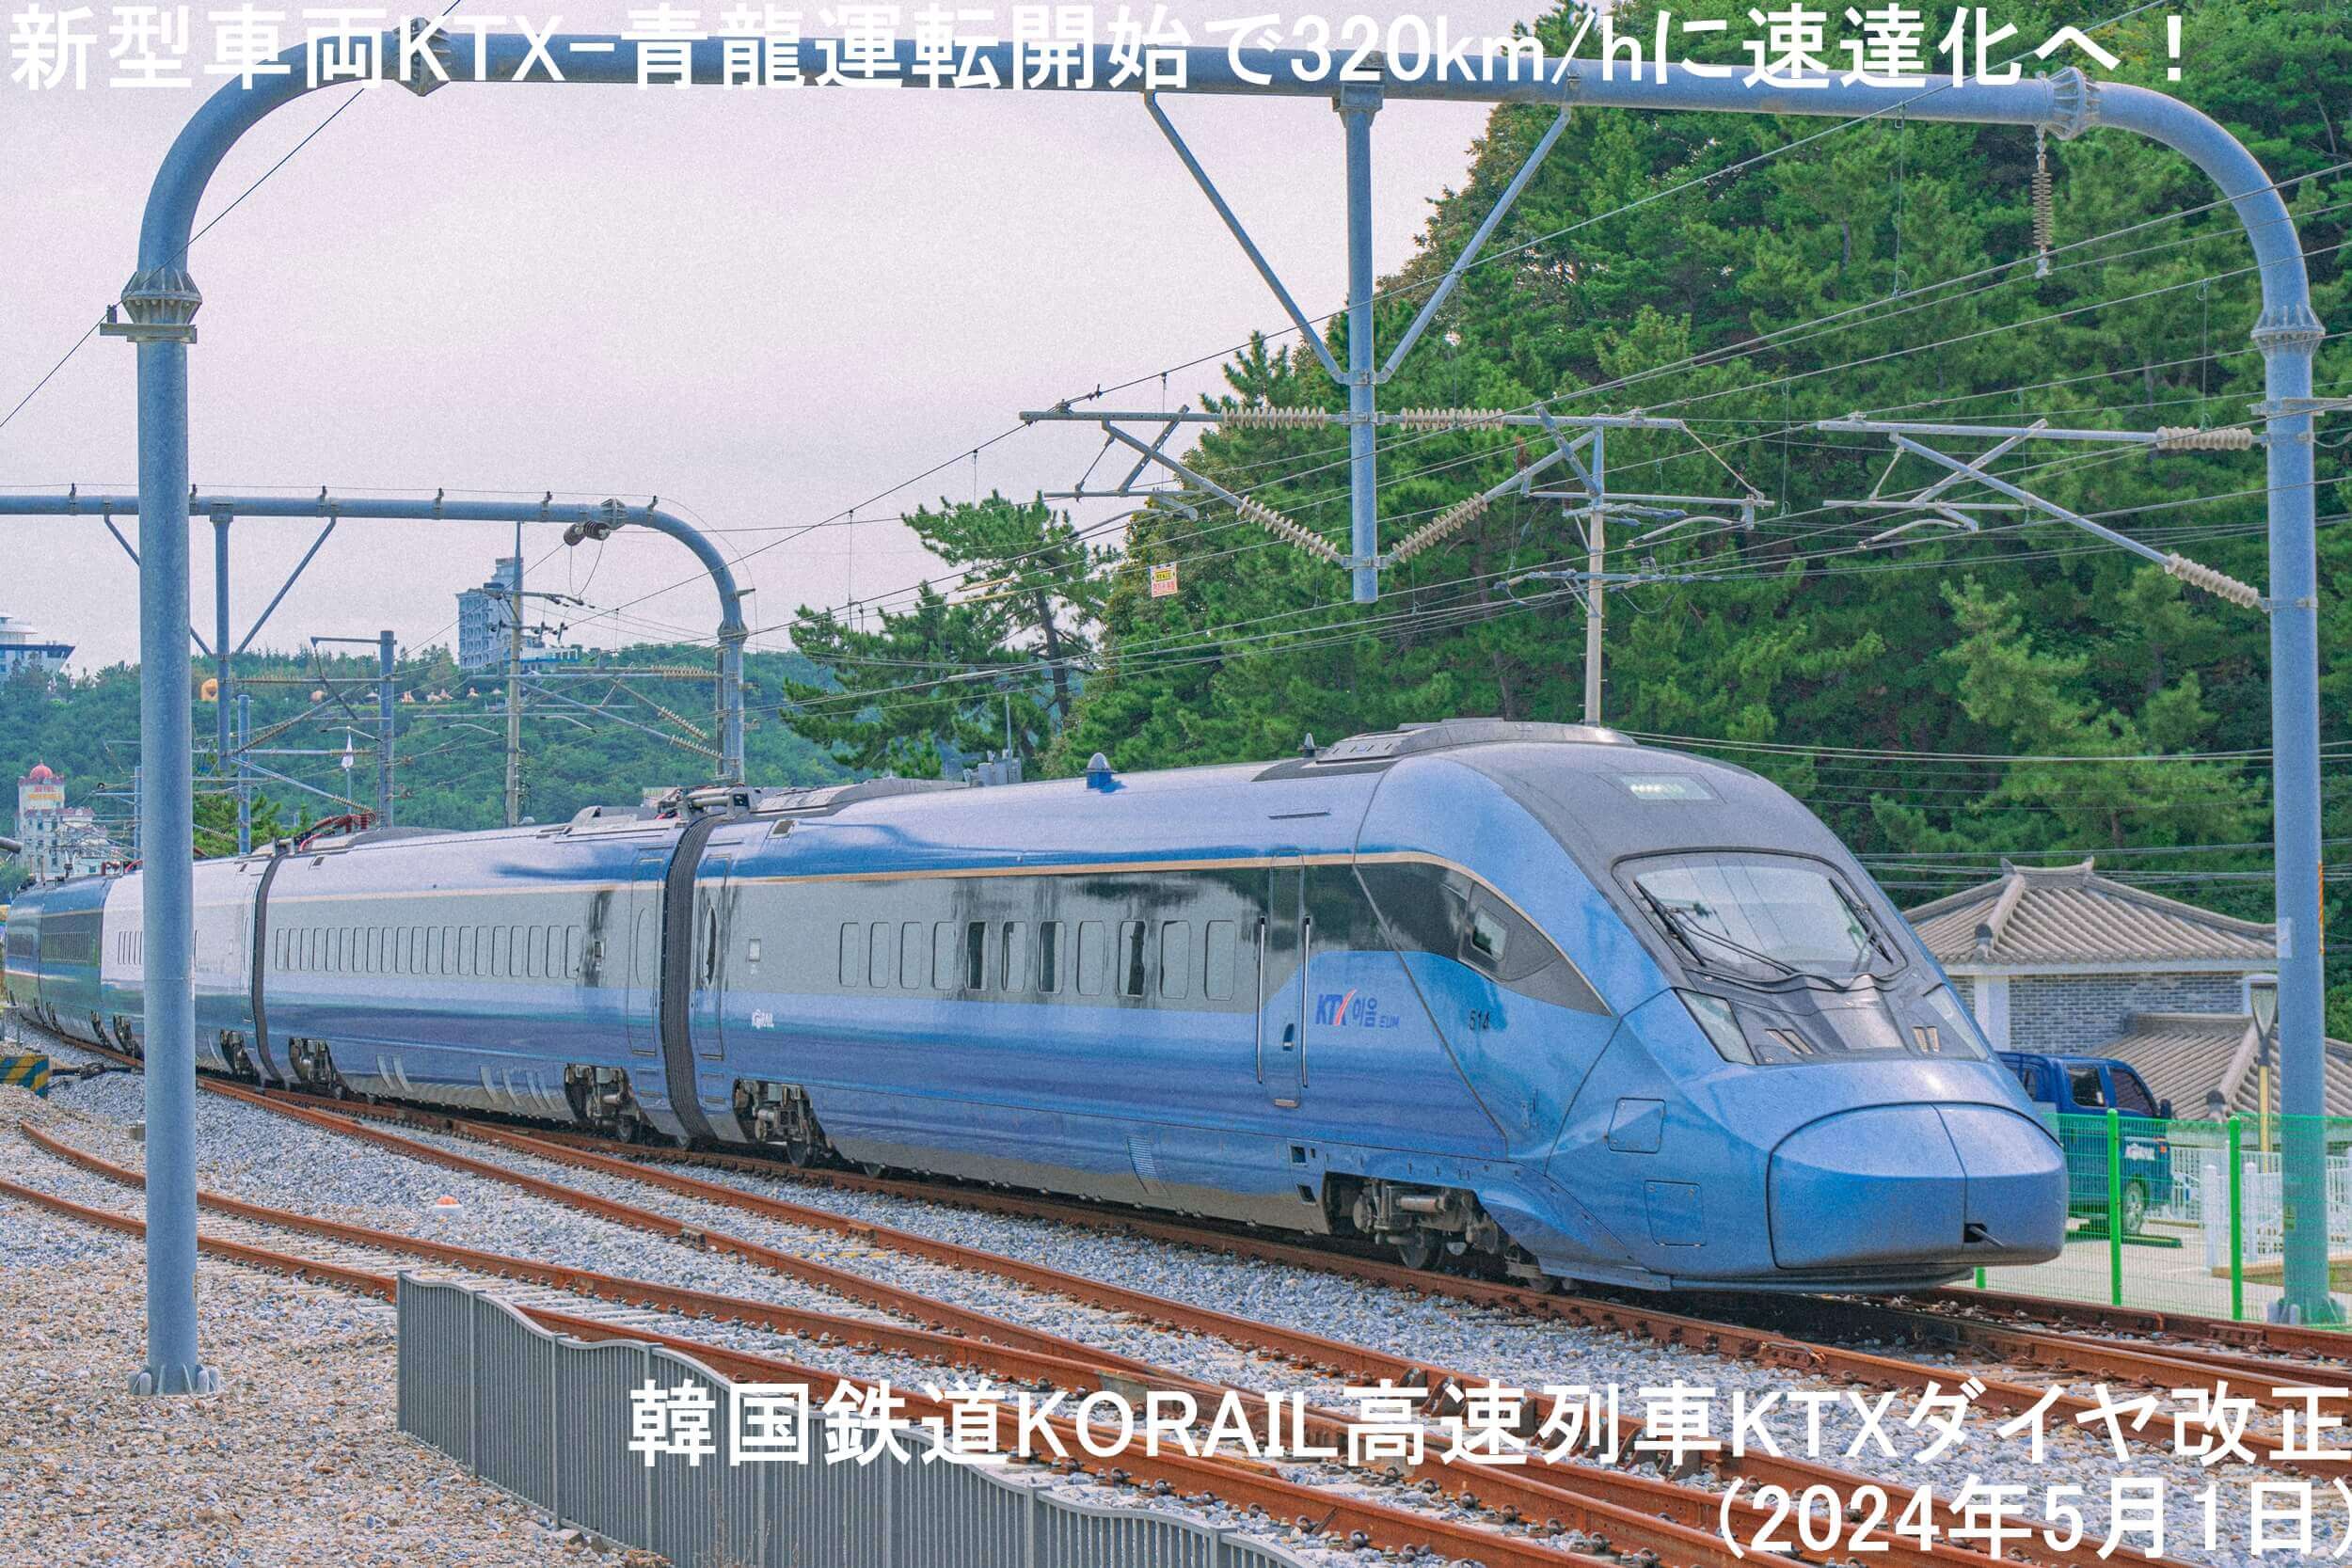 新型車両KTX-青龍運転開始で320km/hに速達化へ！　韓国鉄道KORAIL高速列車KTXダイヤ改正(2024年5月1日)